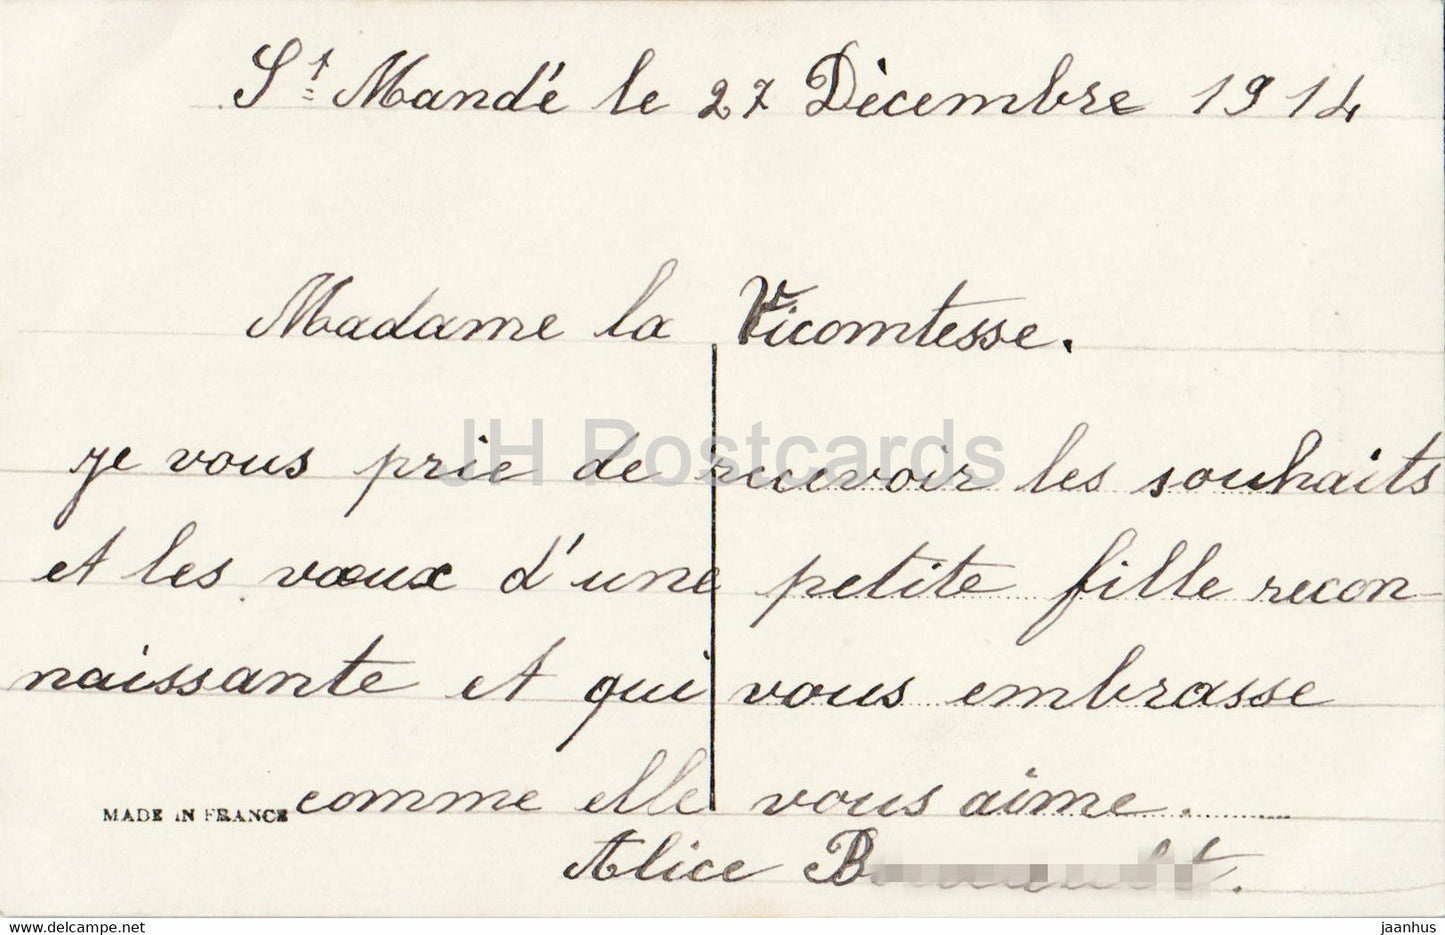 Carte de voeux du Nouvel An - Bonne Annee - fille - 4332 - carte postale ancienne - 1912 - France - occasion